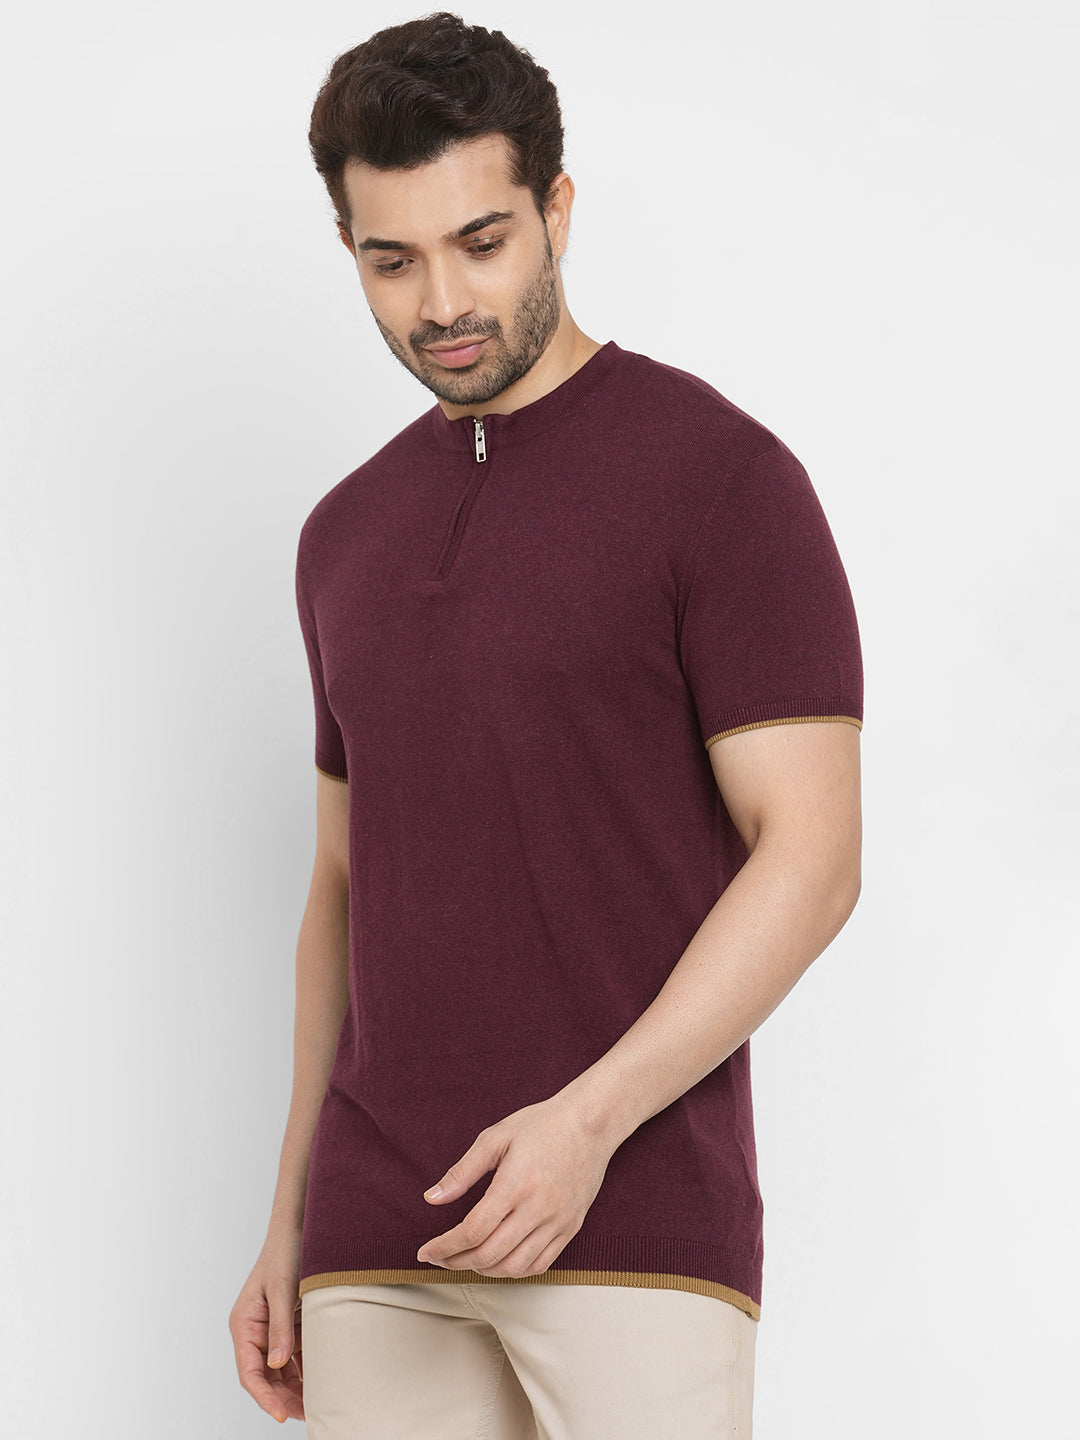 Men's Cotton Blend Fit Regular Fit Short sleeved Wine Tshirt